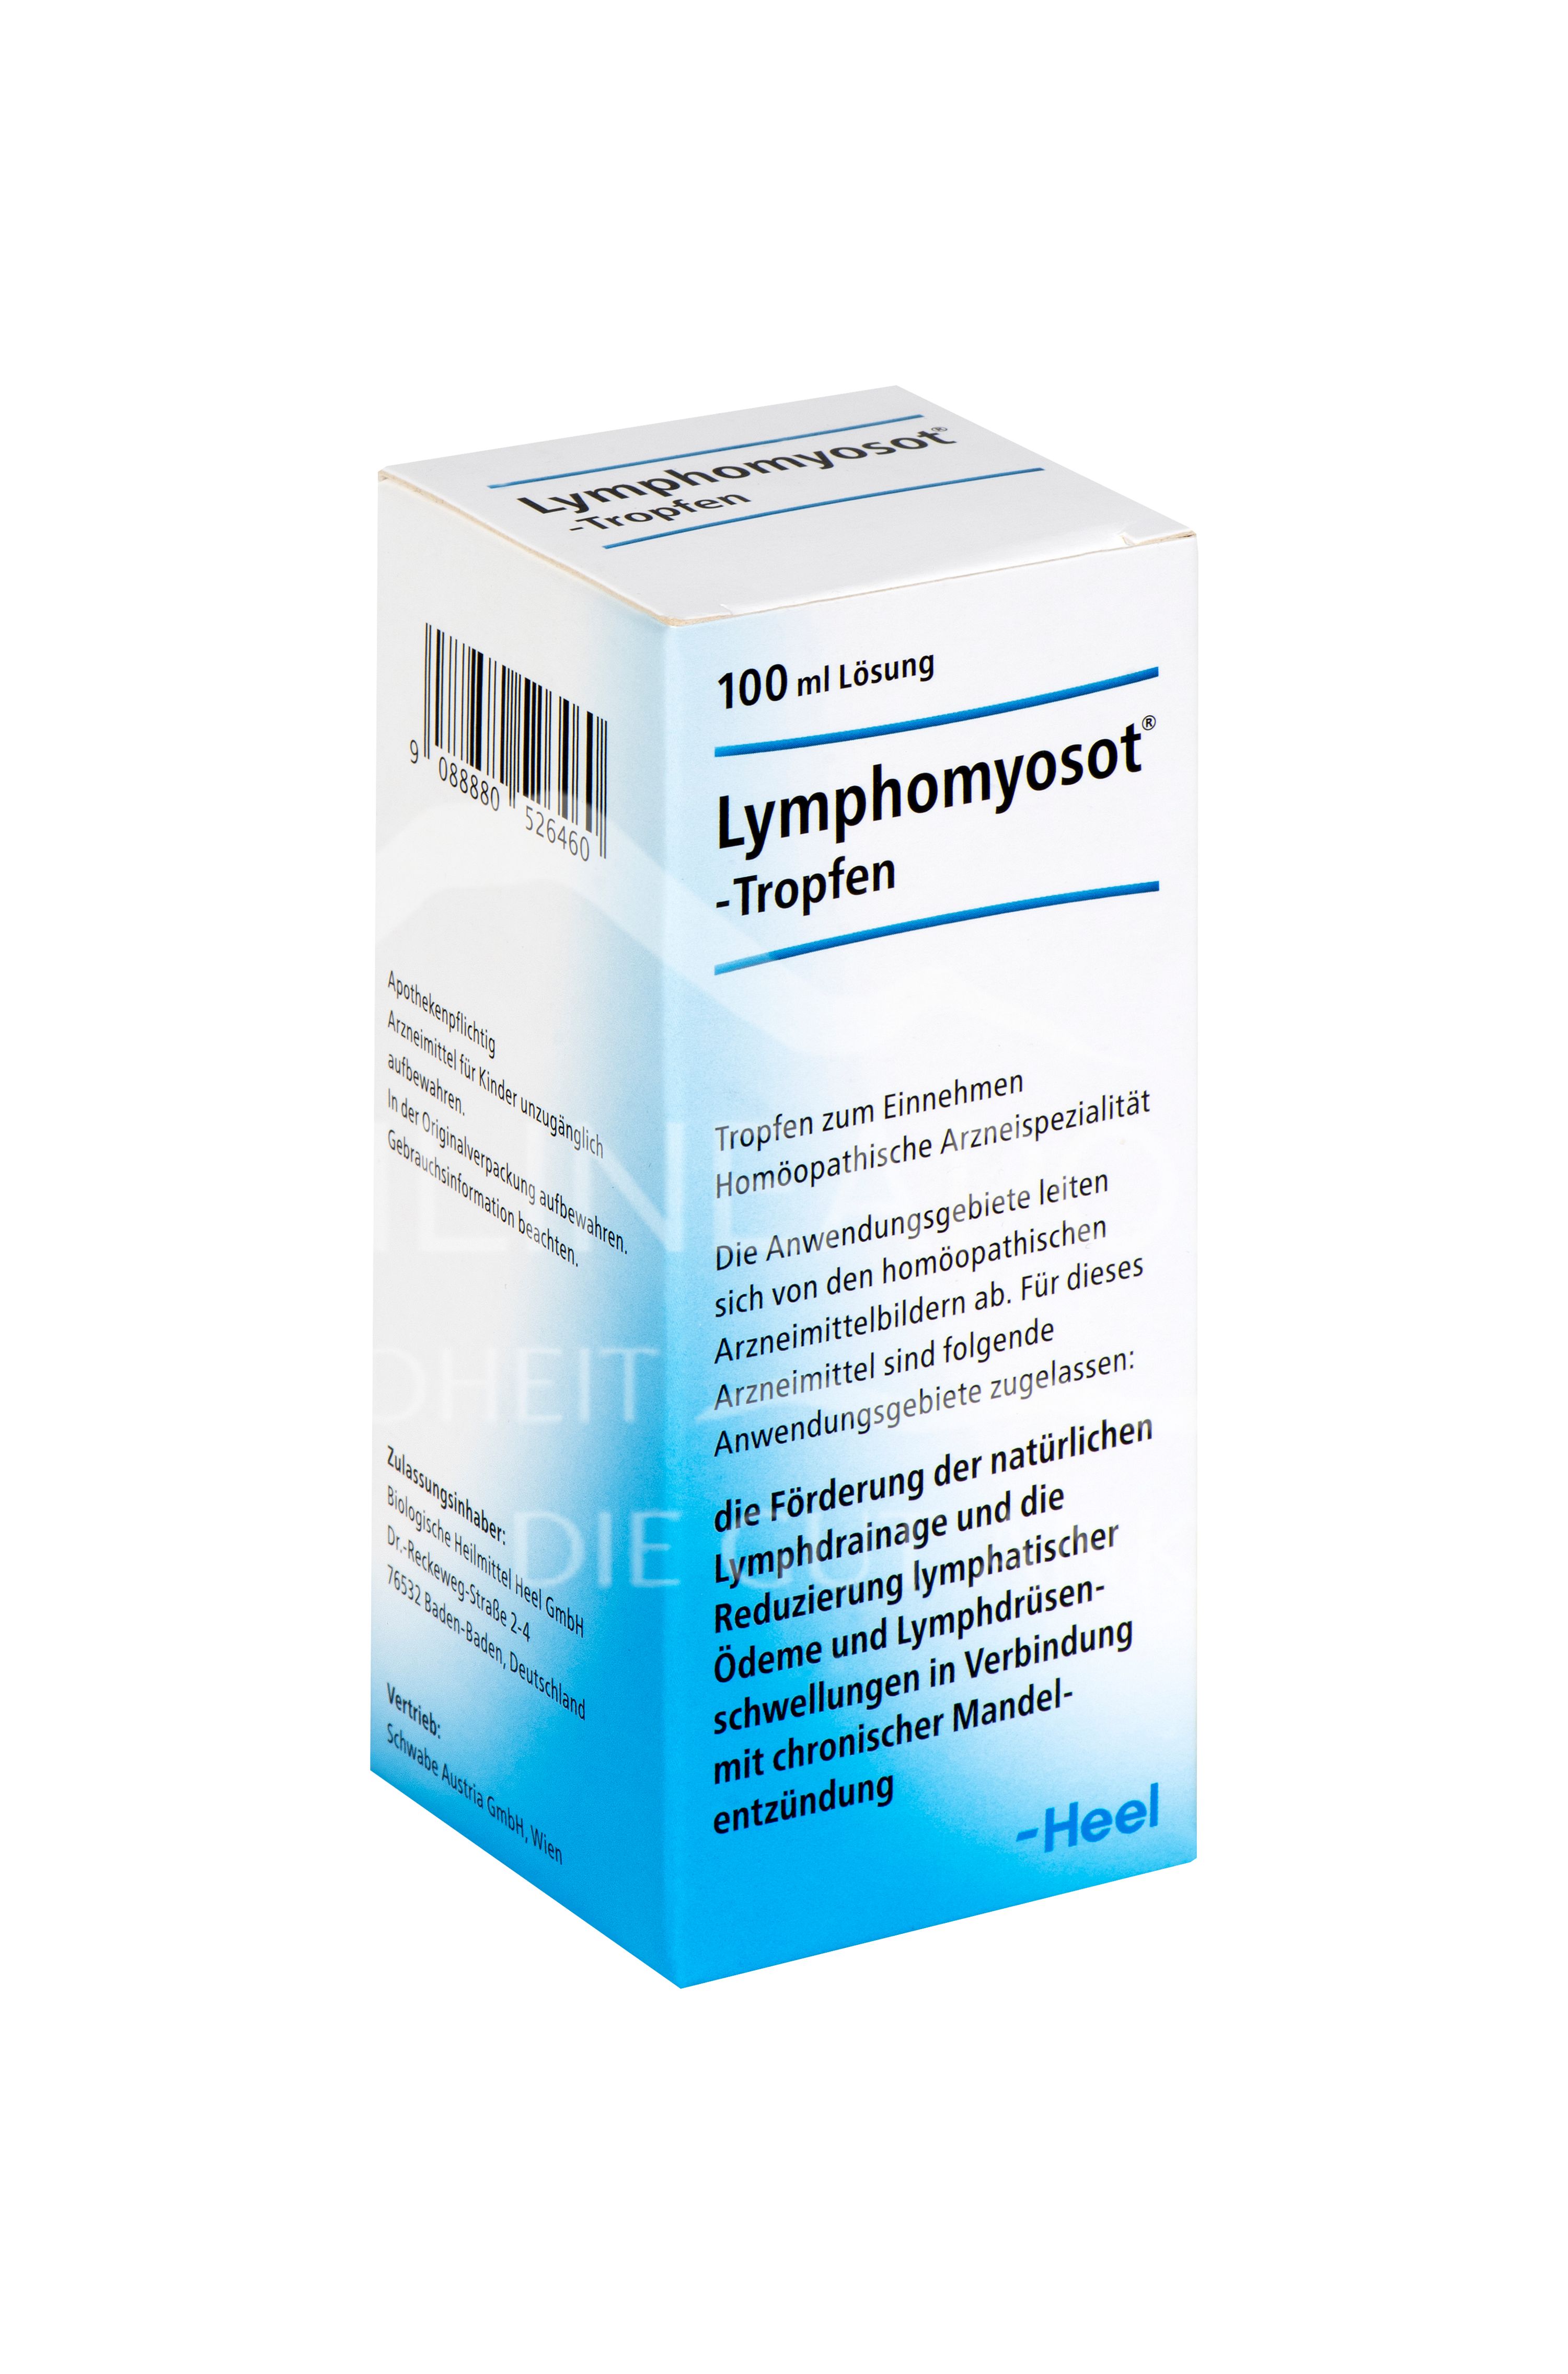 Lymphomyosot® Tropfen